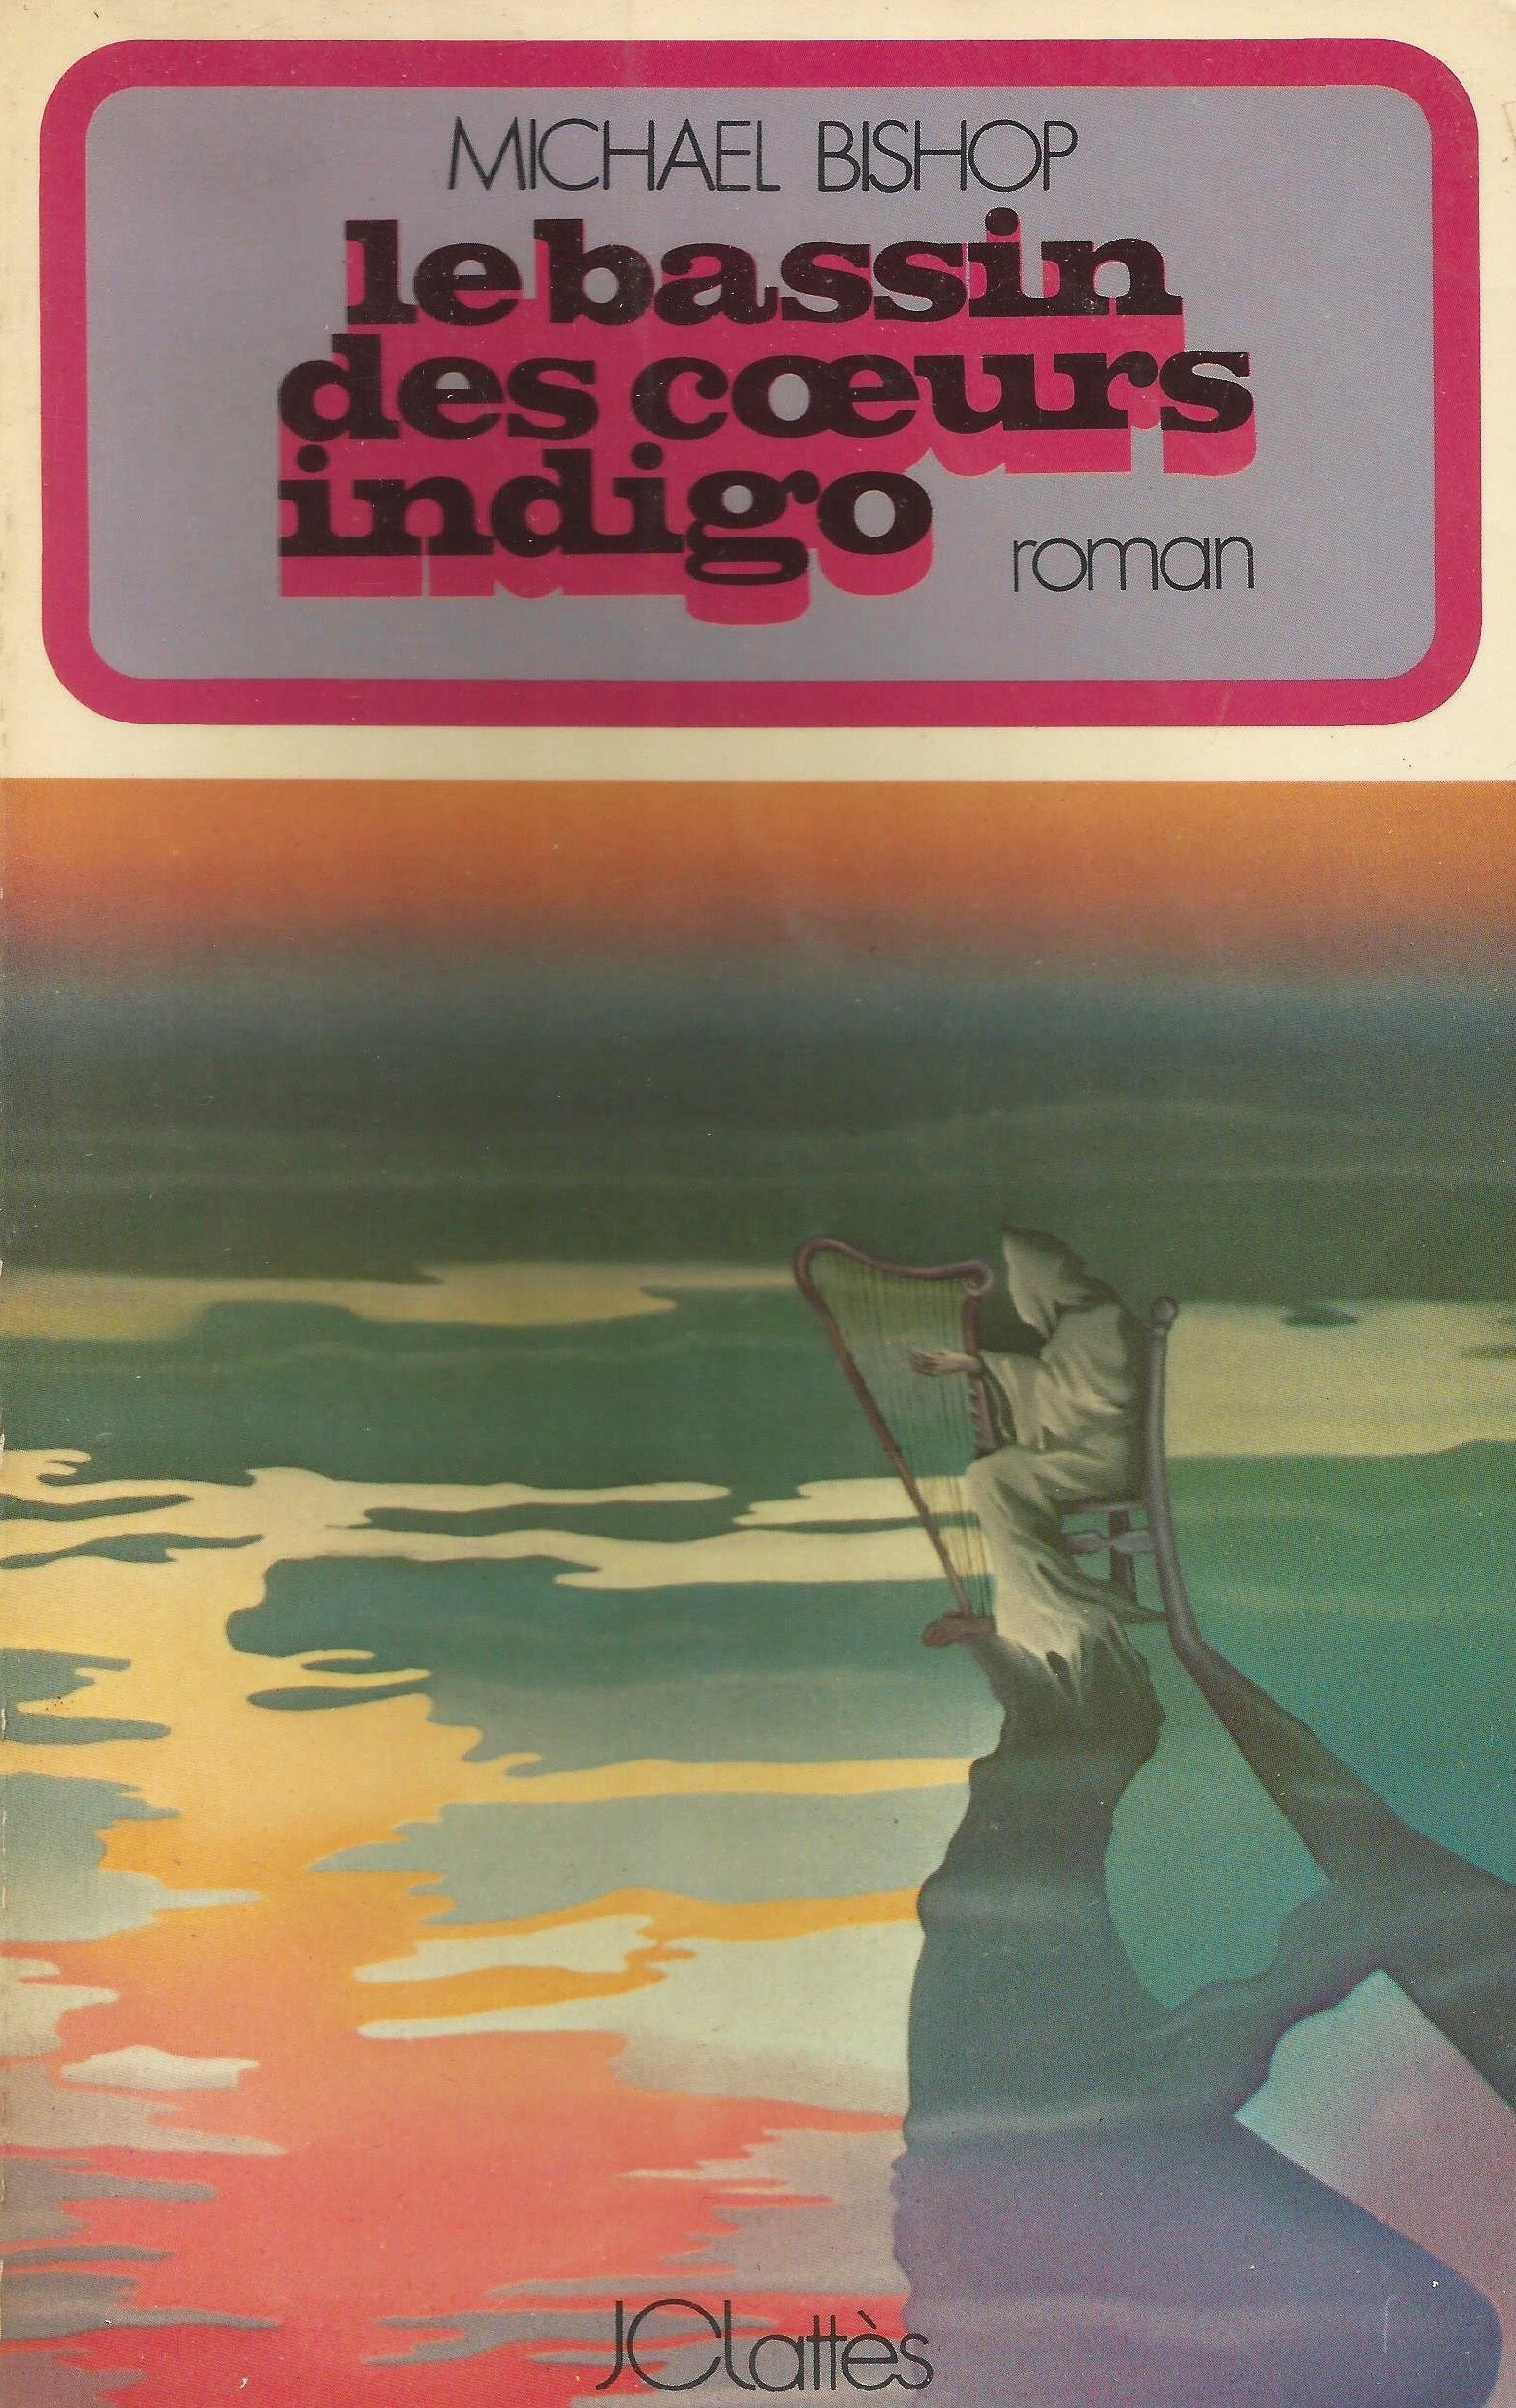 Livre ISBN  Le bassin des coeurs indigo (Michael Bishop)